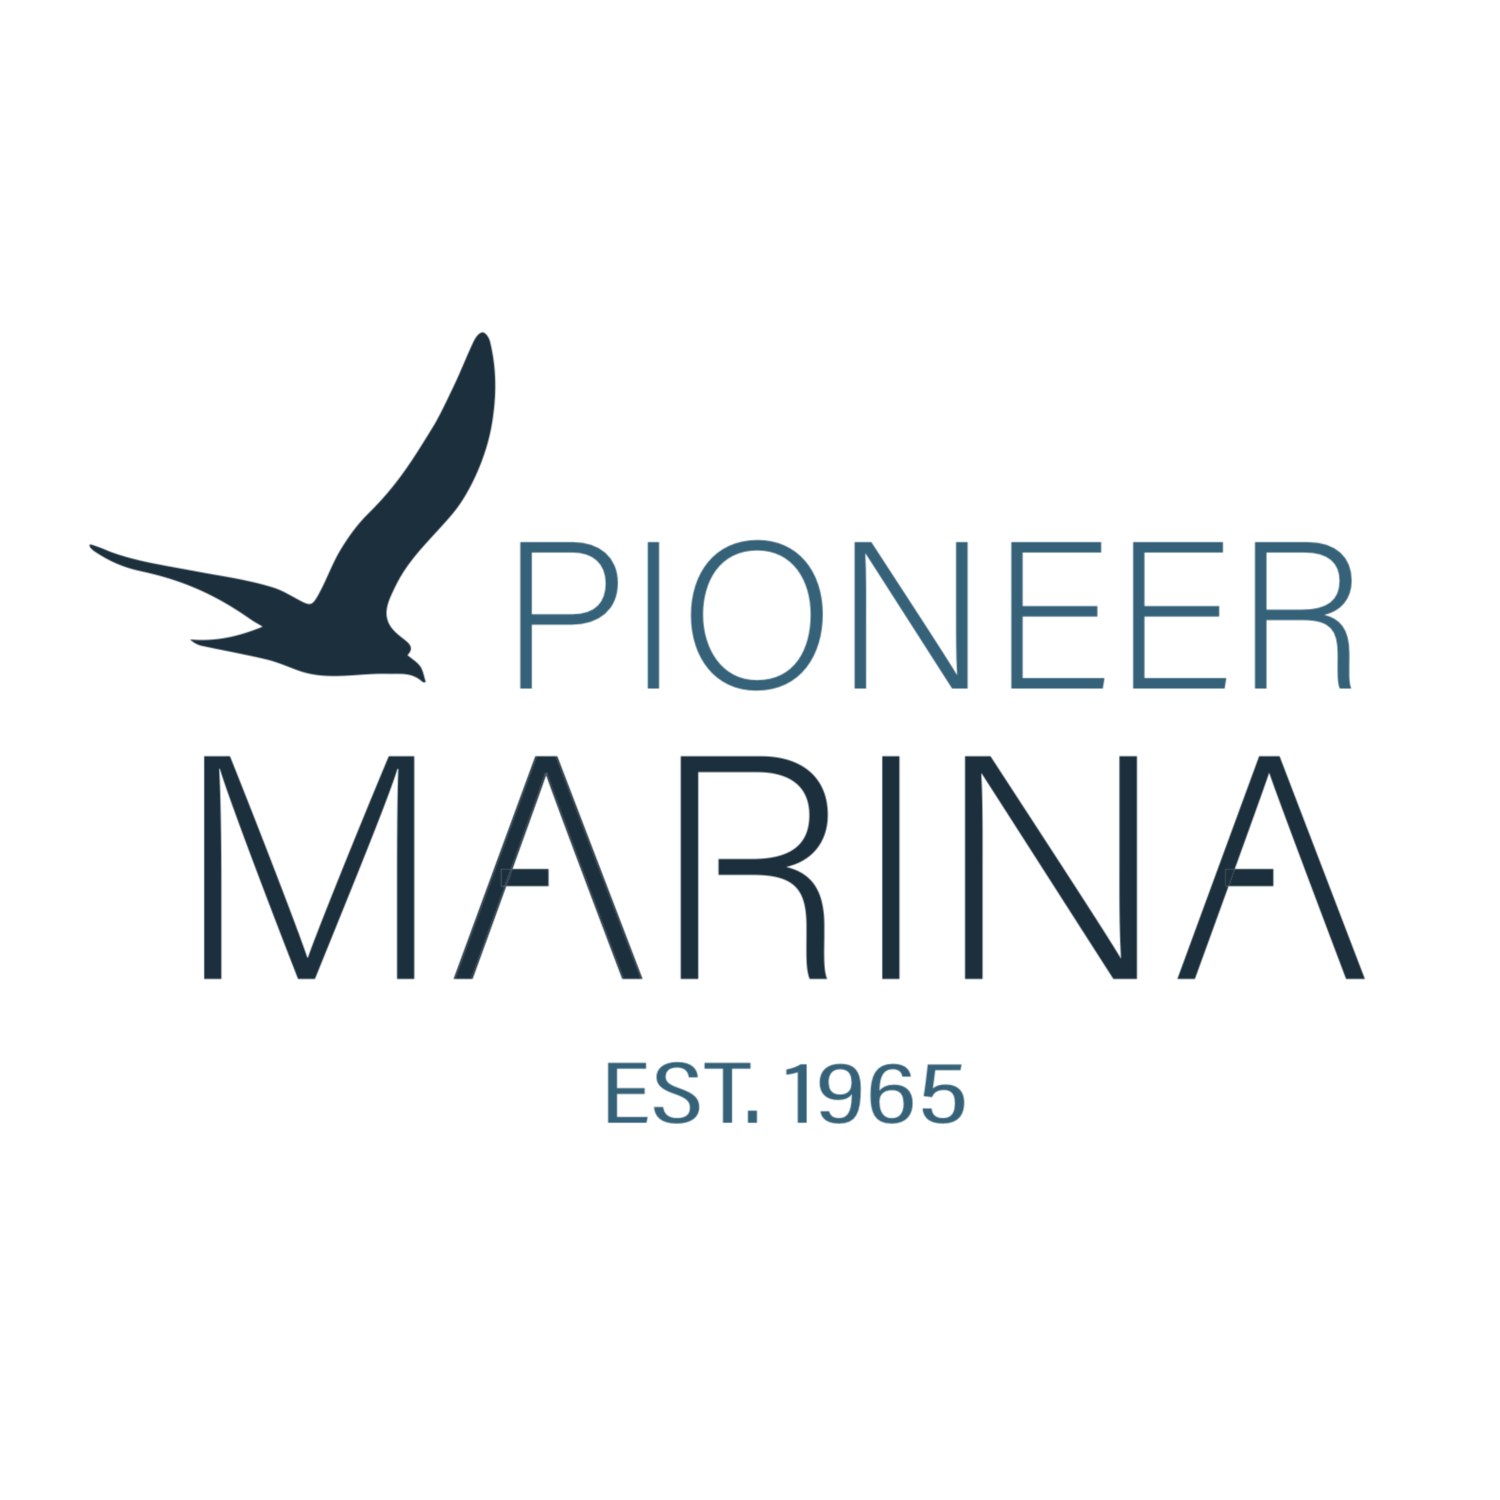 Pioneer Marina (Copy) (Copy)